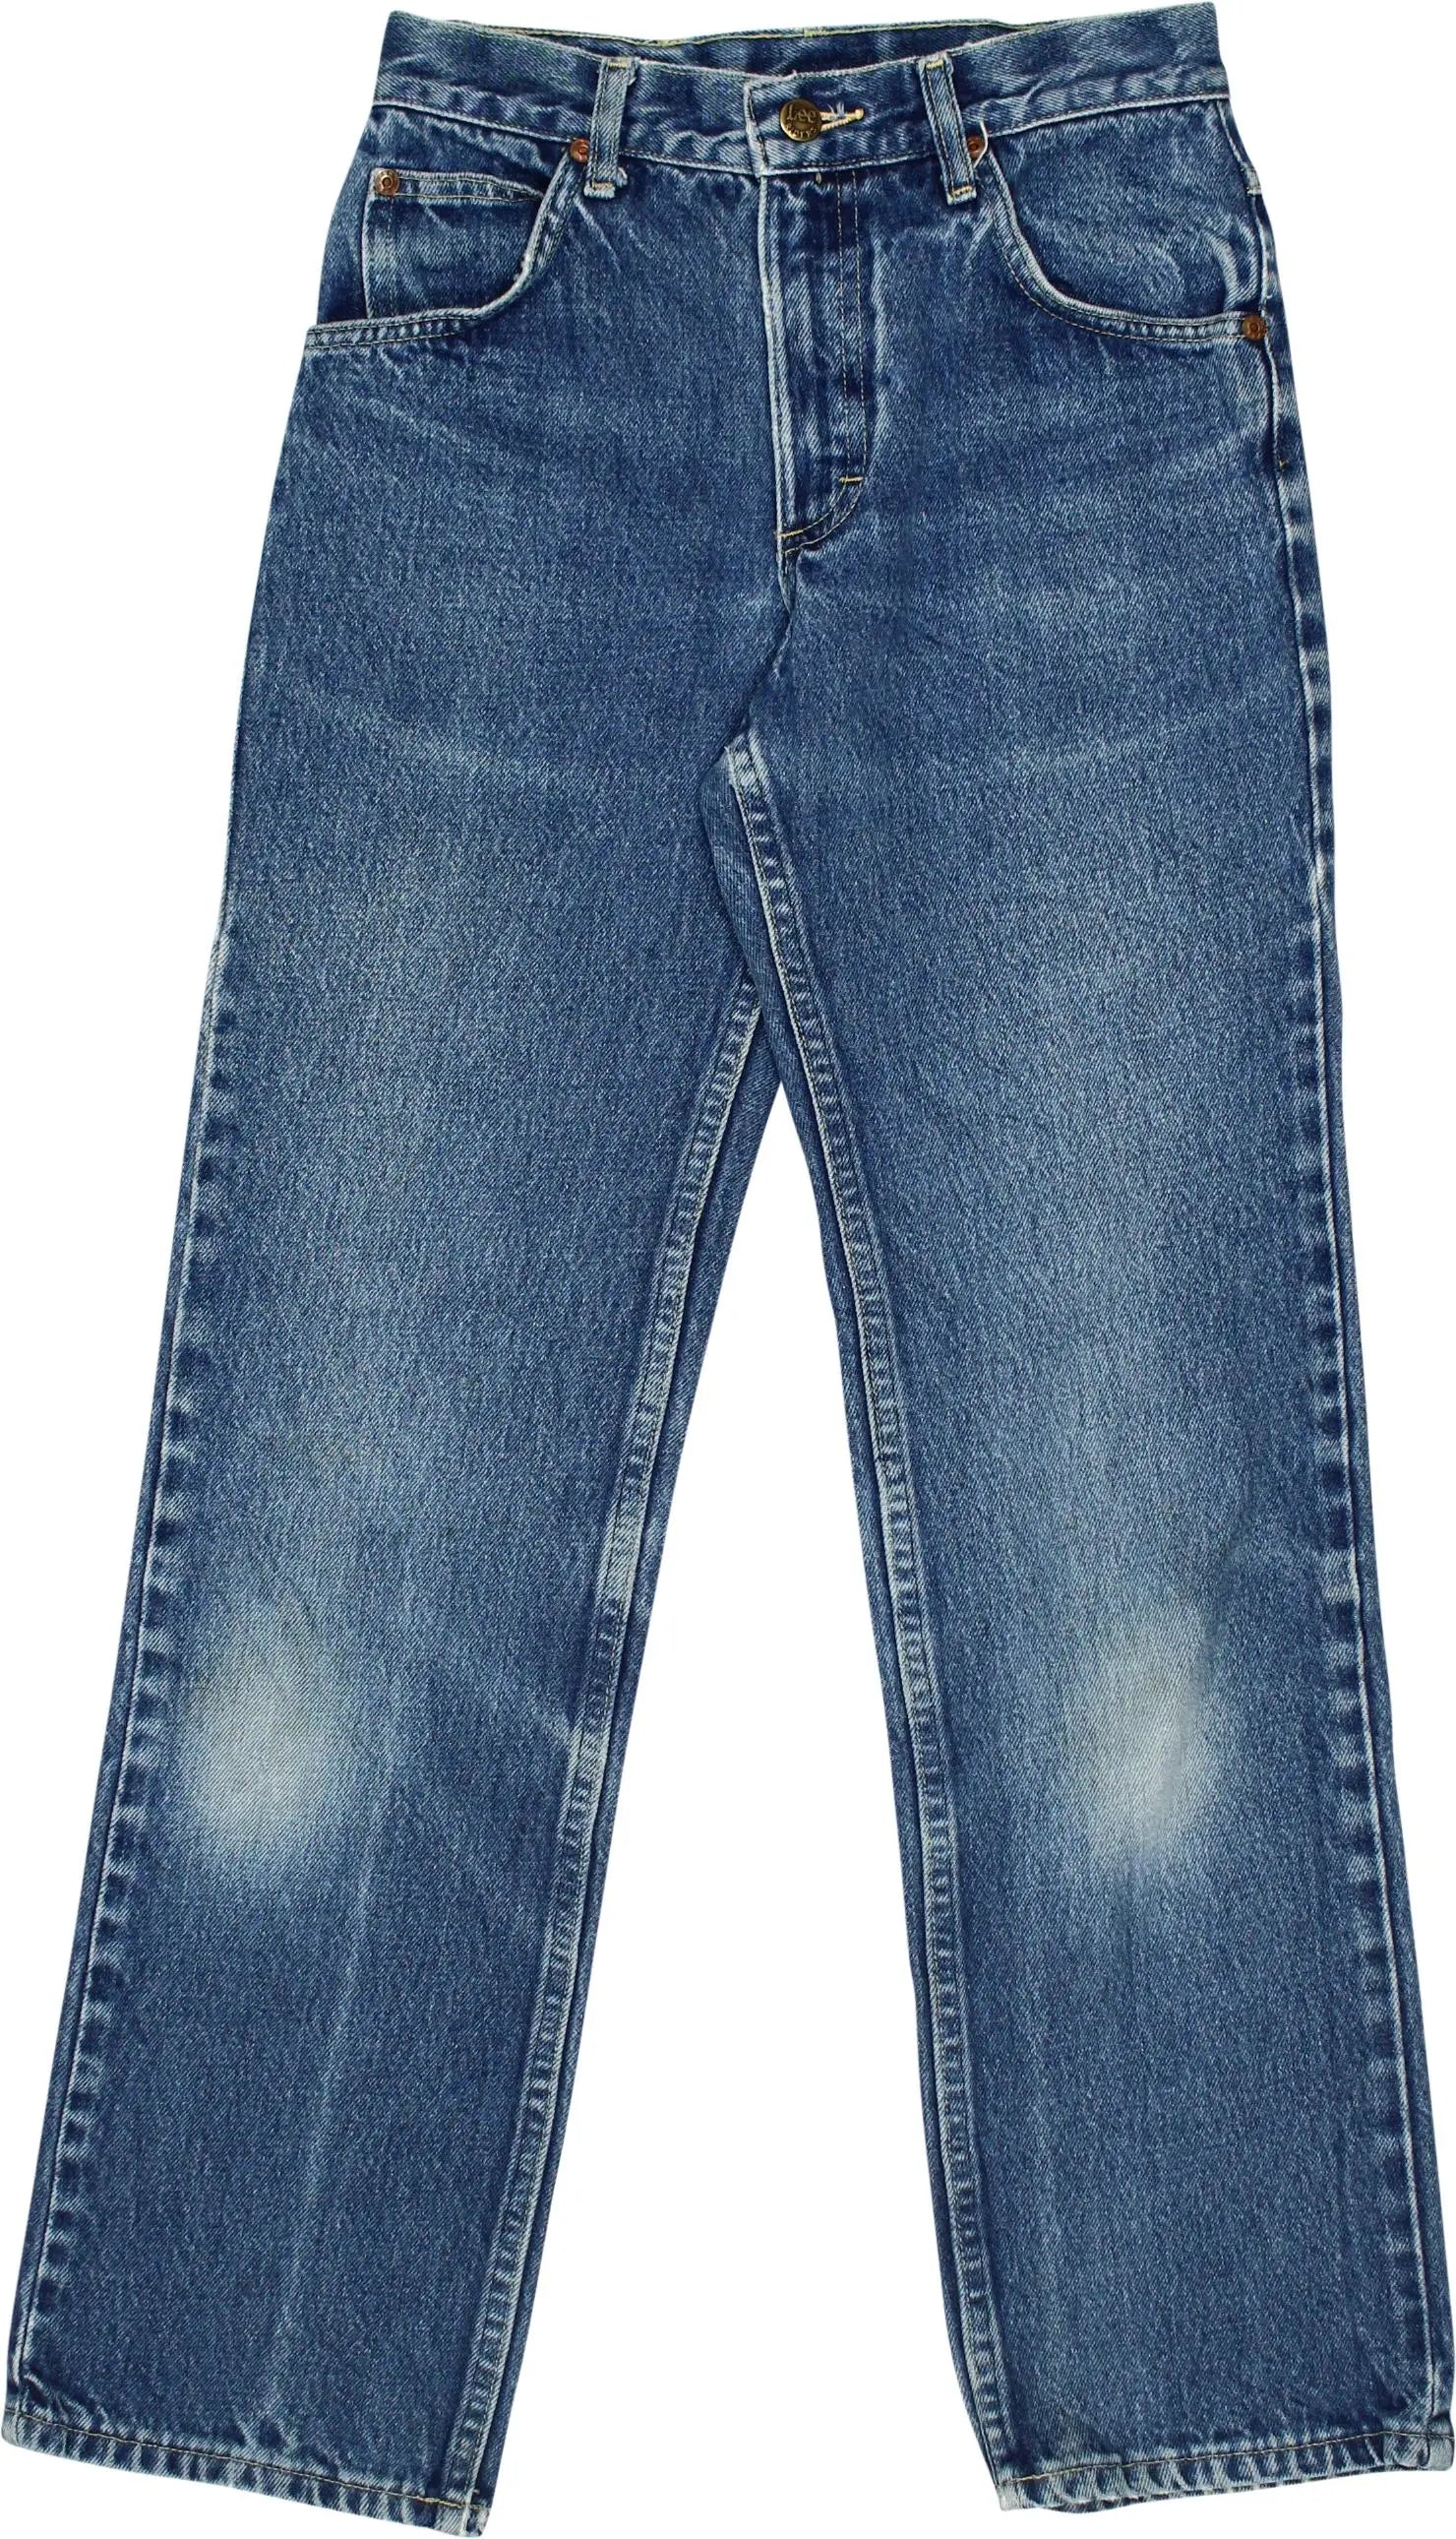 Vintage Levi's Capri 3/4 Length Jeans